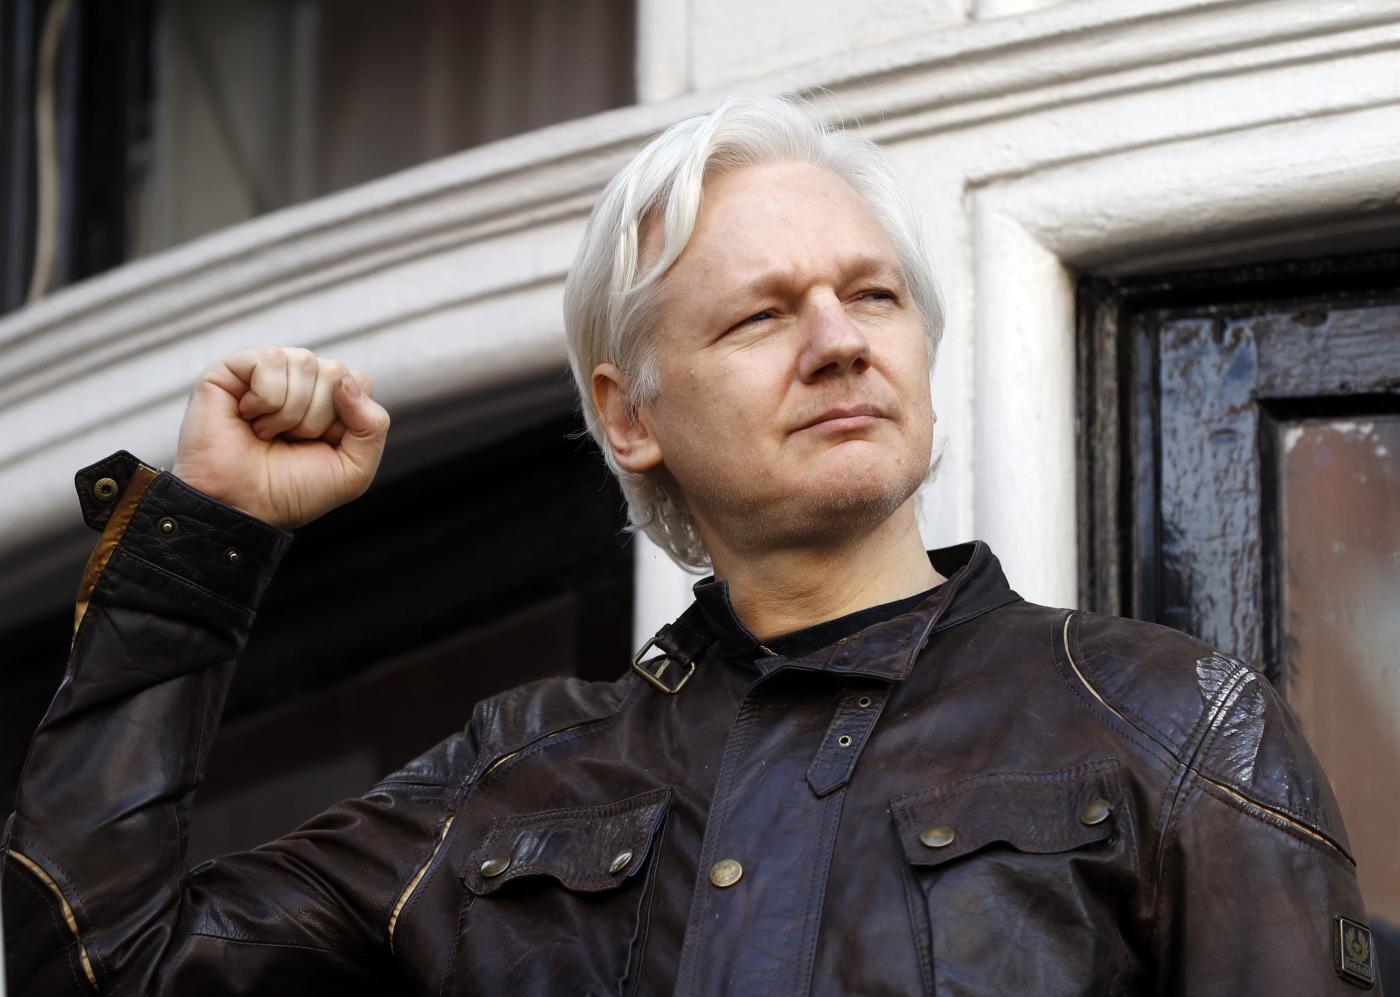 Cittadinanza Assange, il M5S: grazie a chi l’ha votata